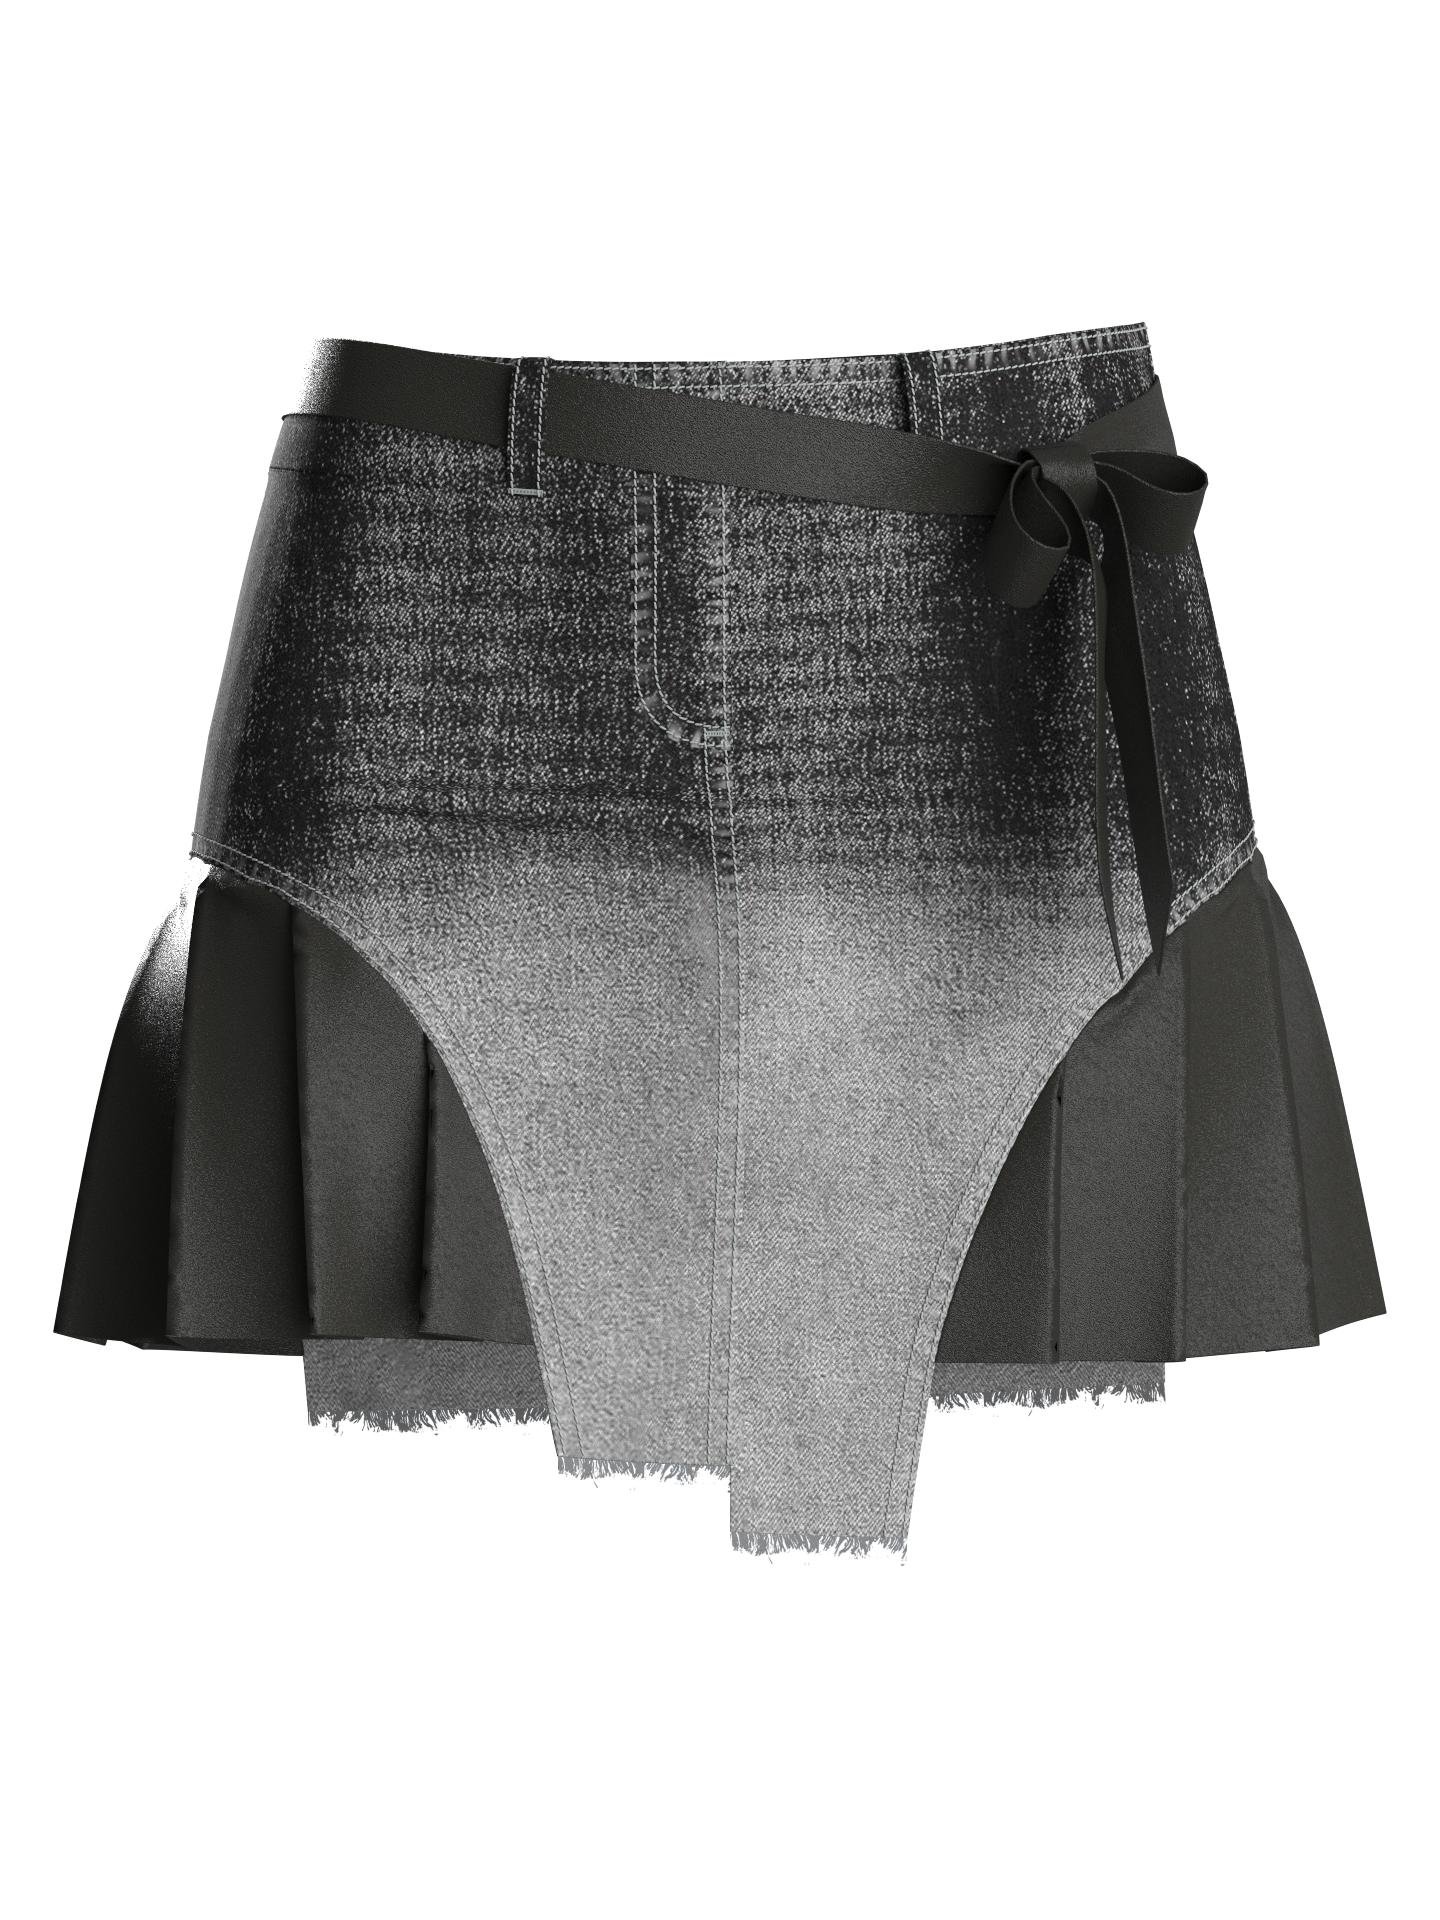 Future Noir Skirt by CLOLOVER